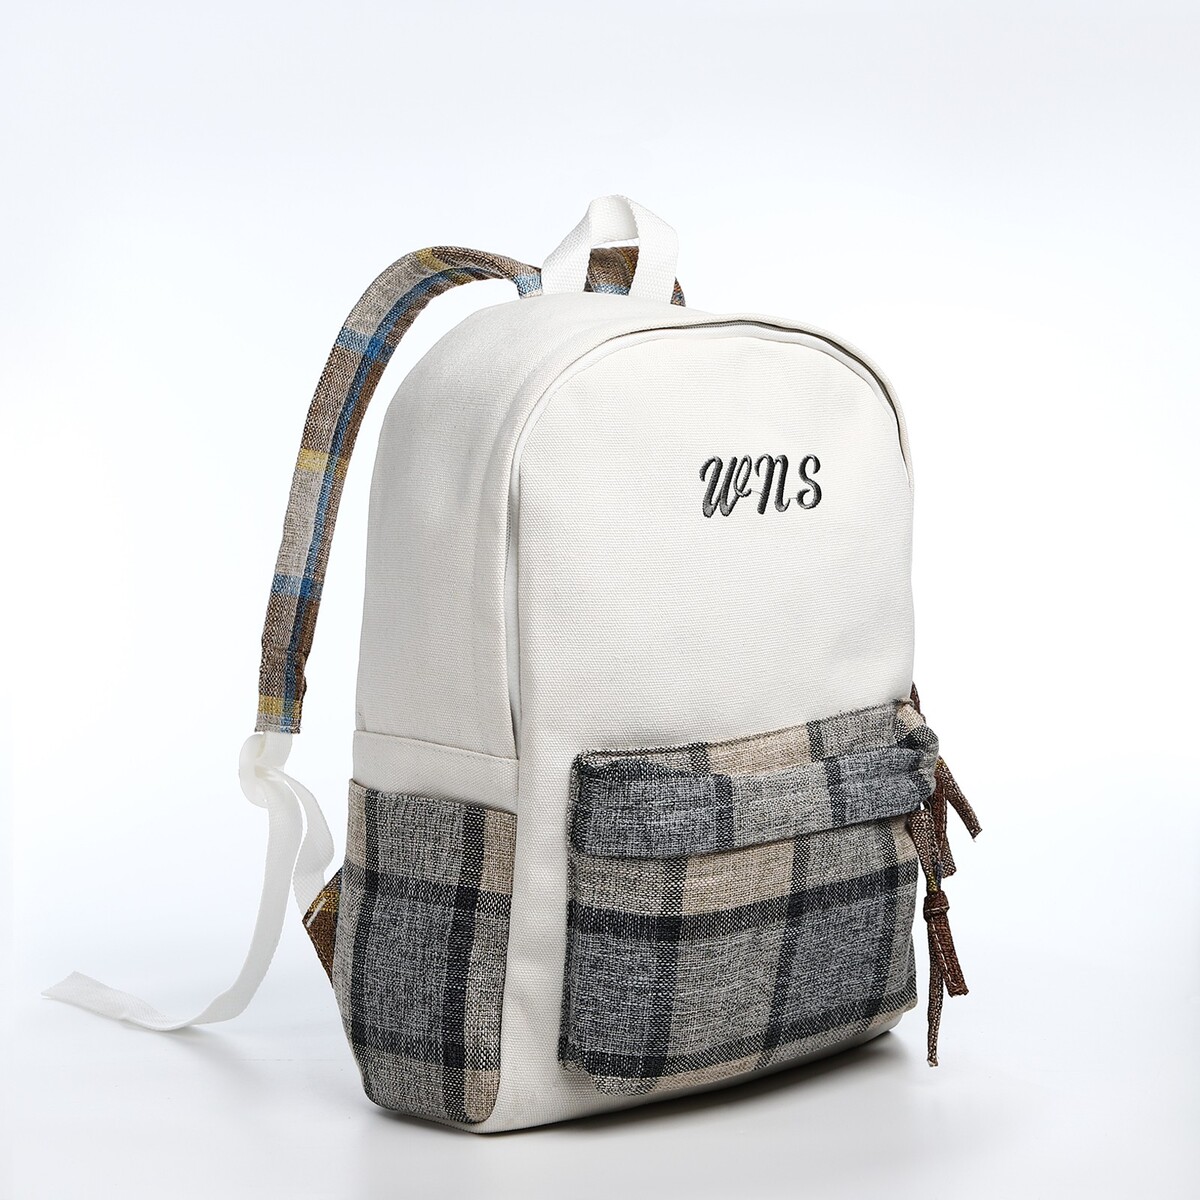 Рюкзак молодежный из текстиля, 3 кармана, цвет белый/серый/бежевый